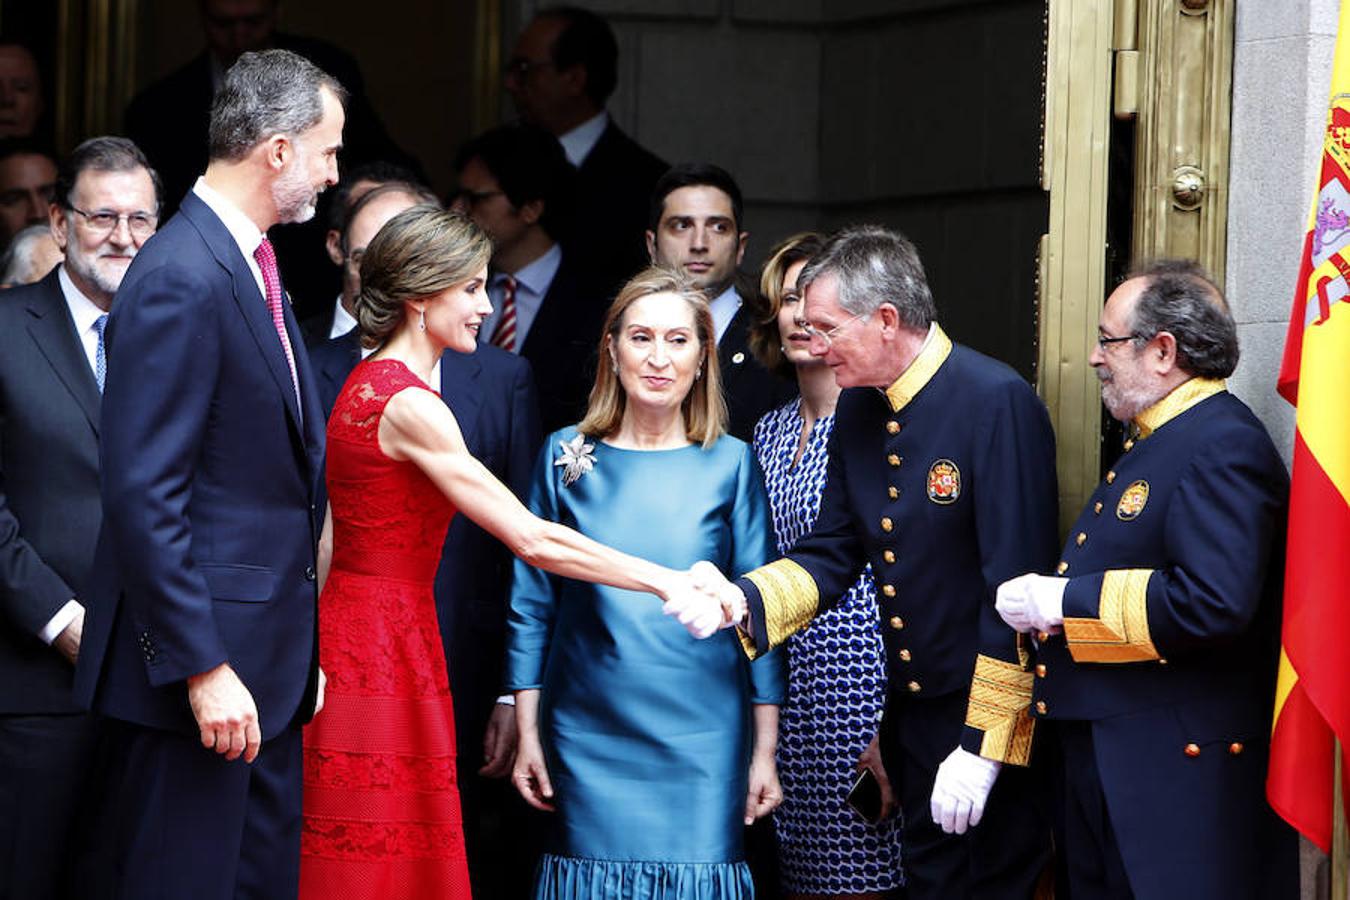 La Reina Letizia saludando a los ujieres en su llegada al Congreso